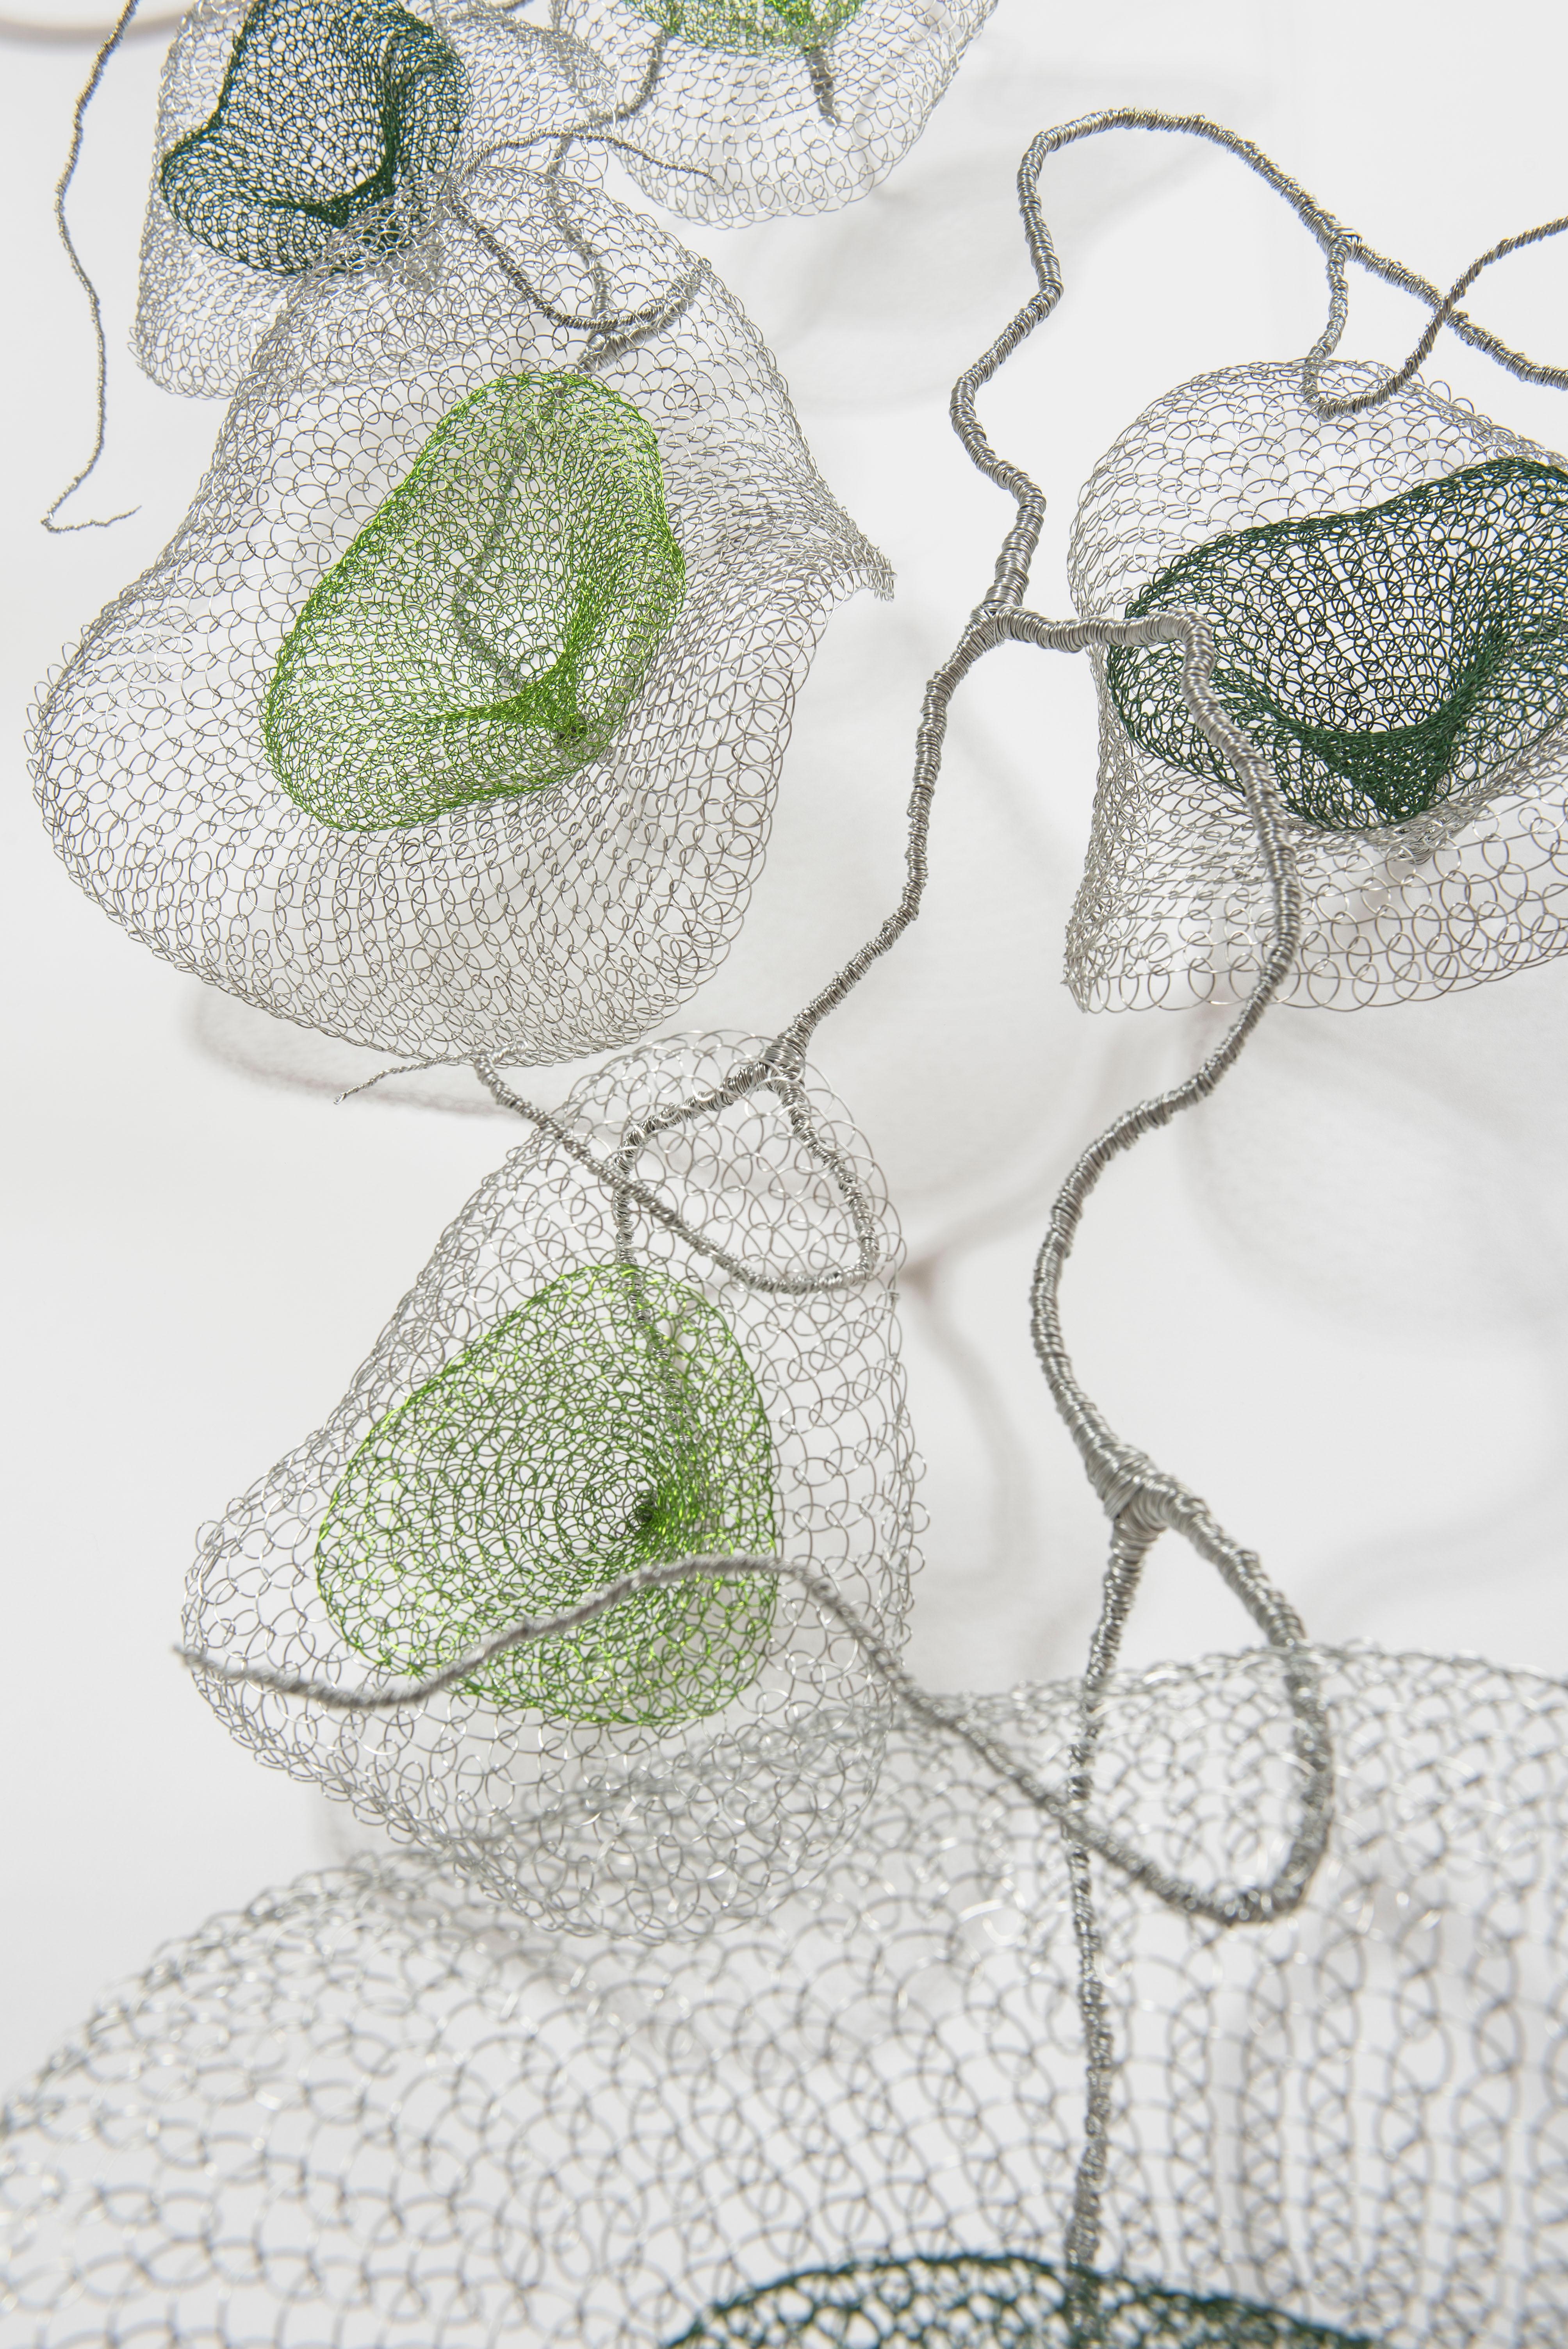 wire mesh sculpture